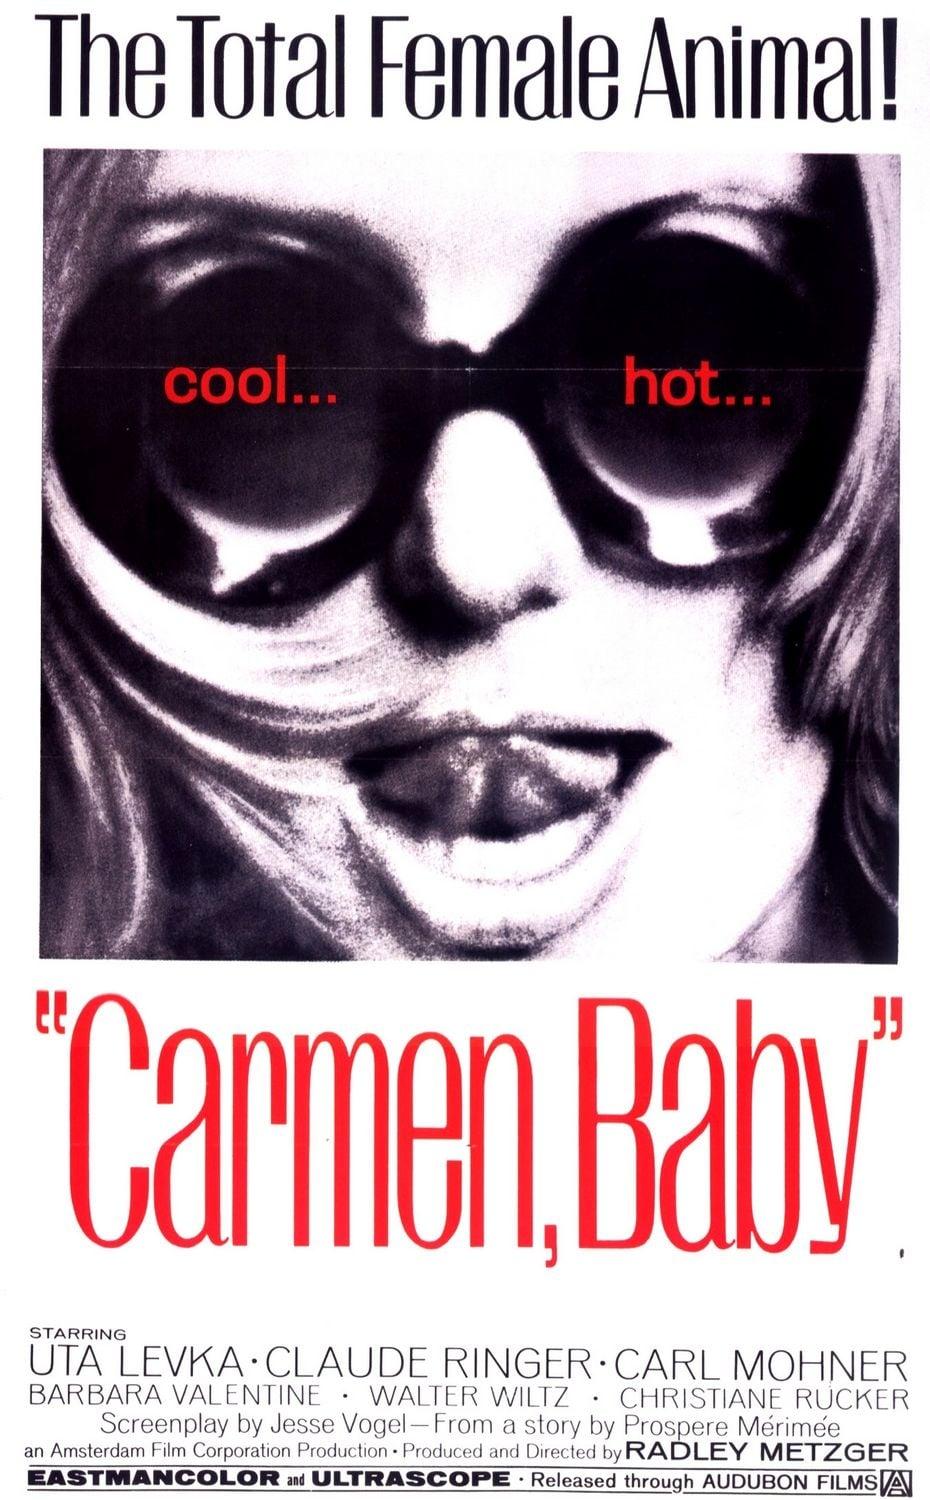 Carmen, Baby poster